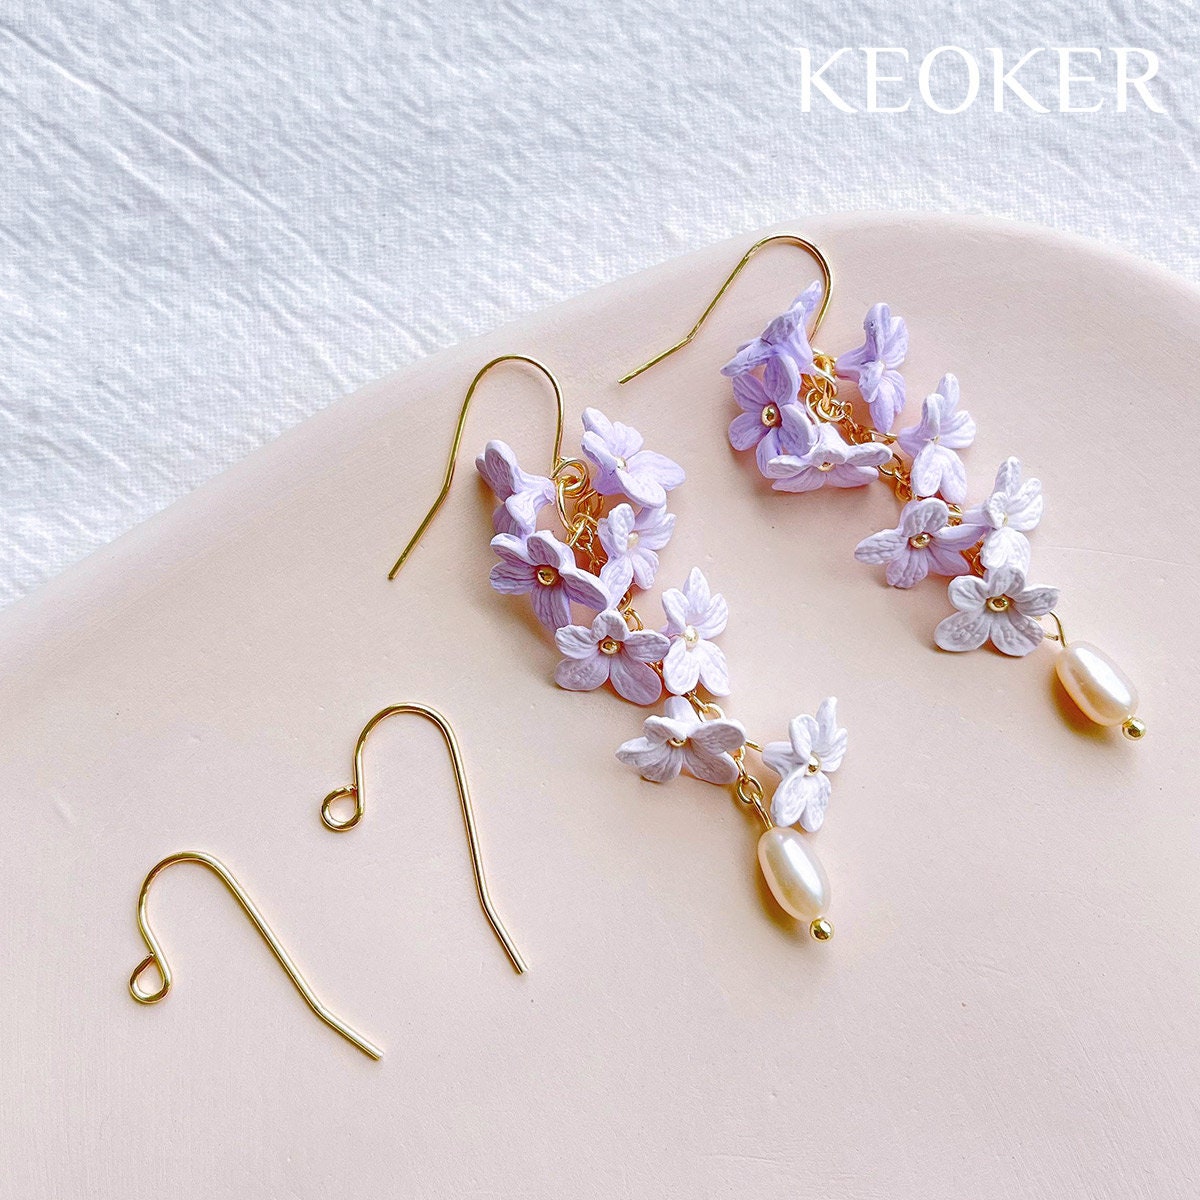 DIY Flower Earring Making Kit – Tender Loving Empire